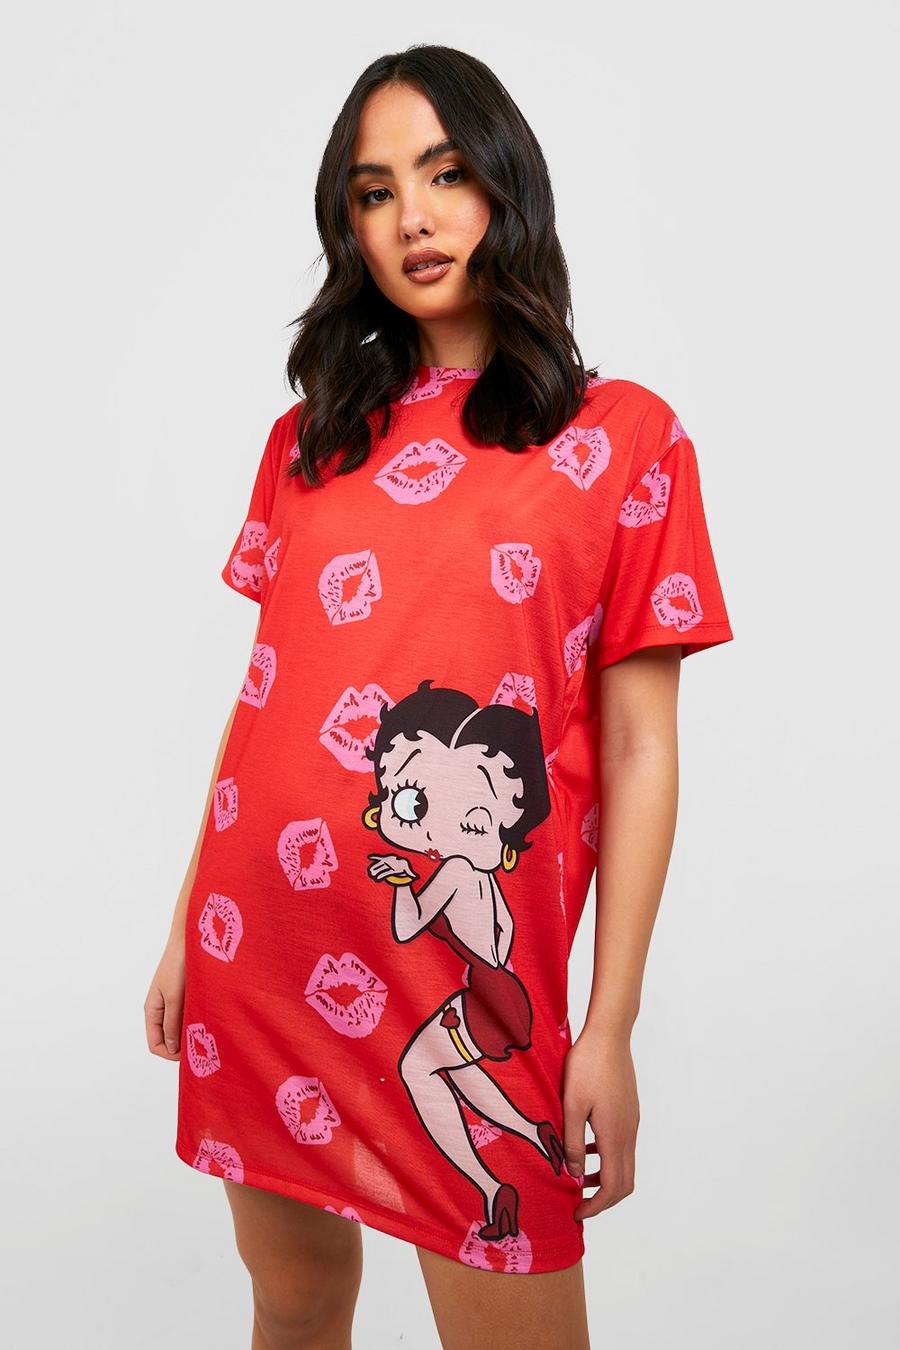 Red Betty Boop Pajama Sleep T-Shirt